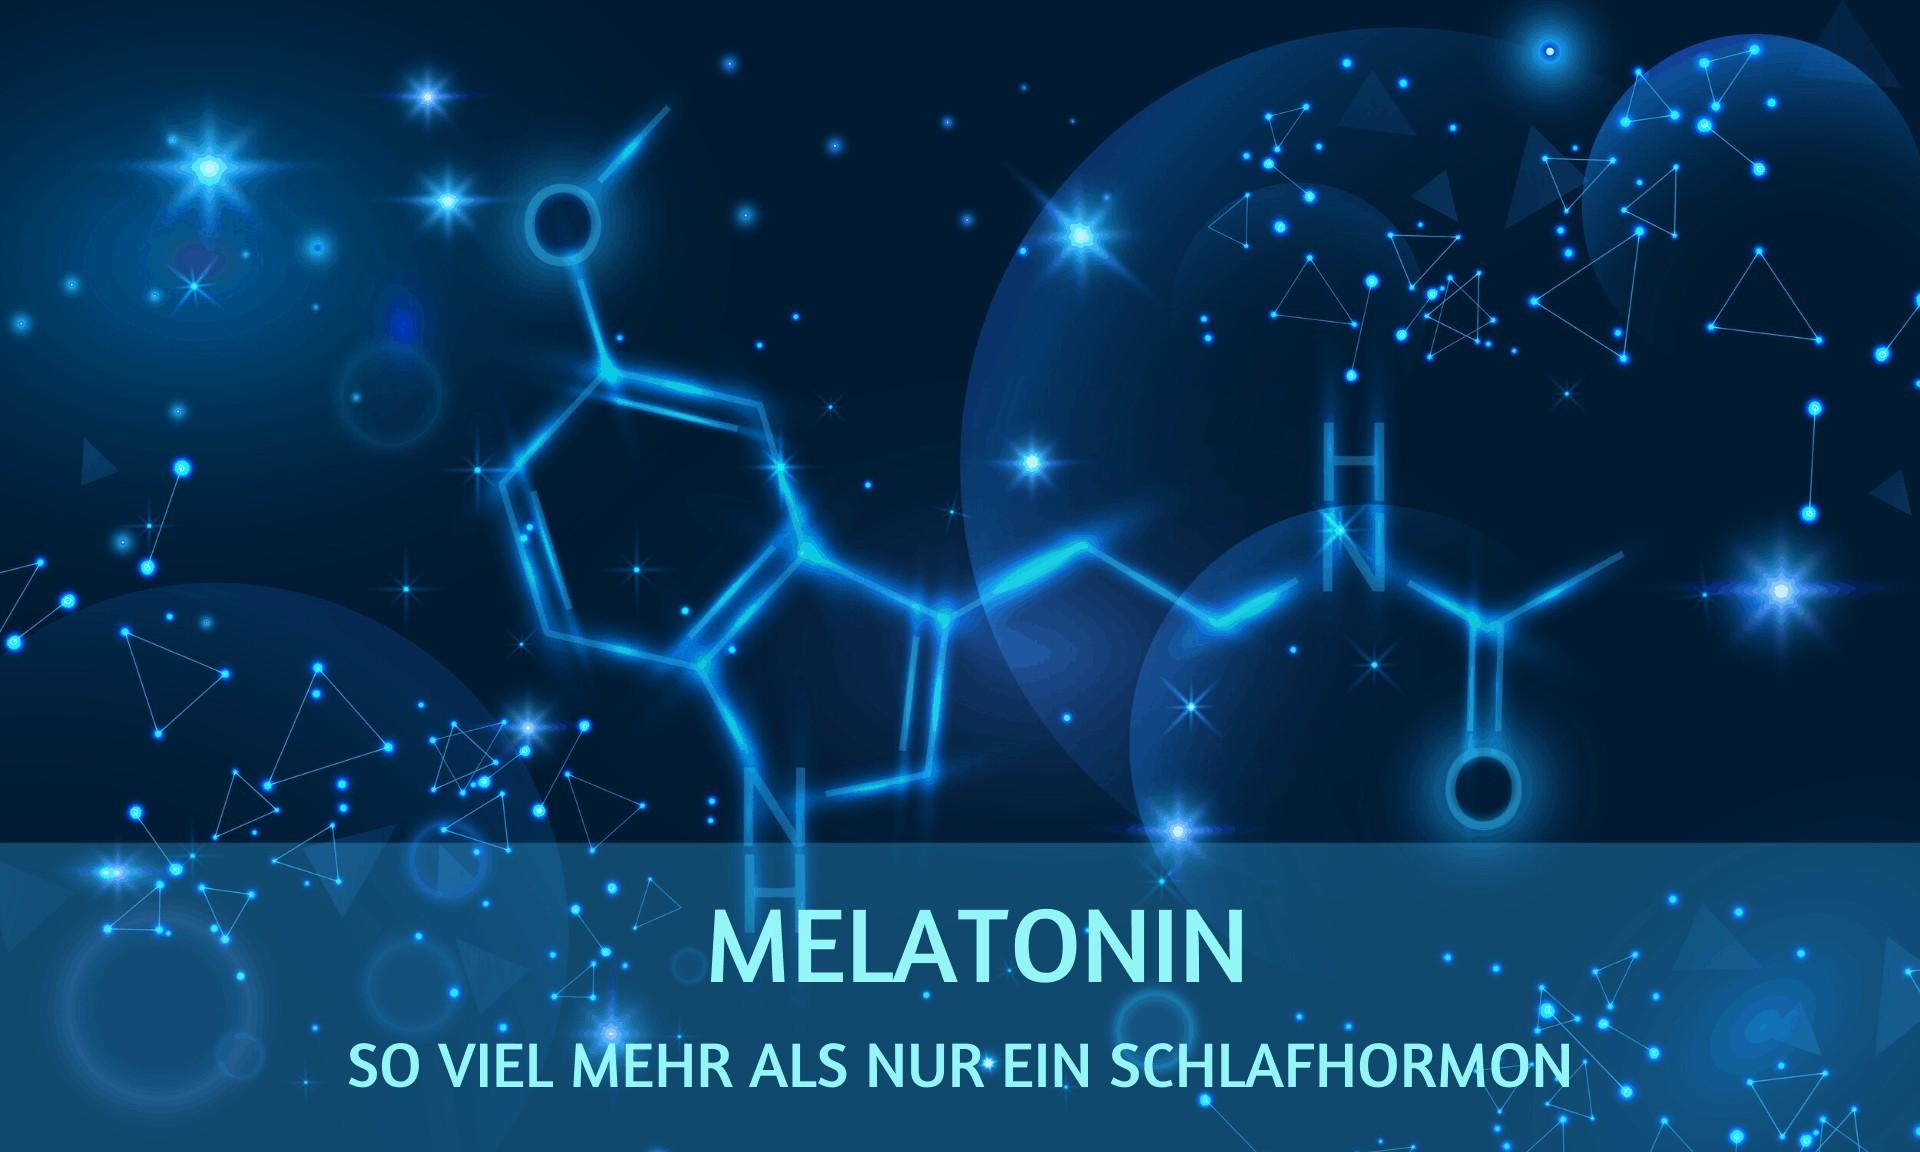 Melatonin: So viel mehr als nur ein Schlafhormon